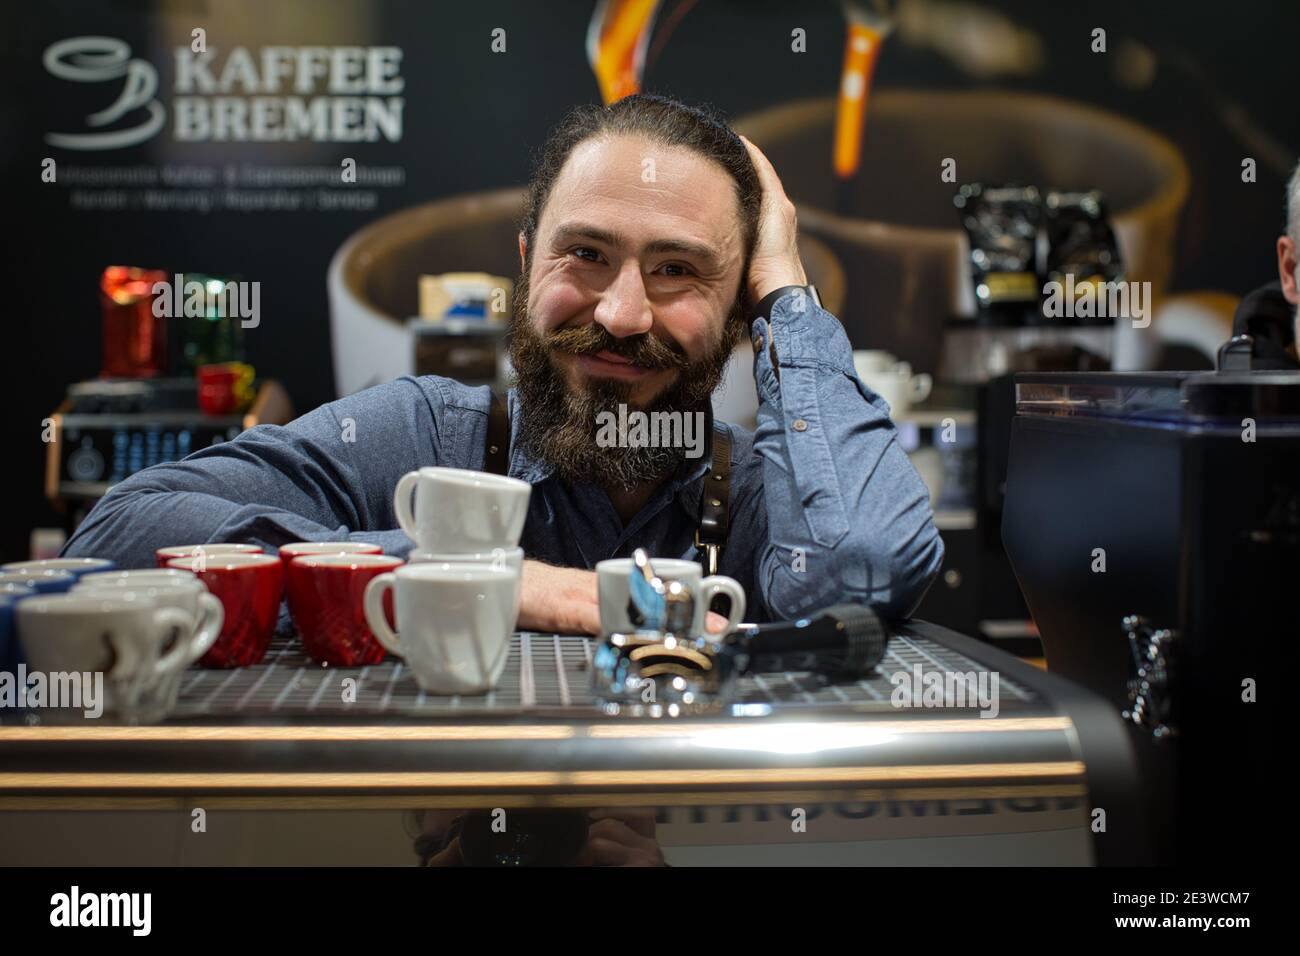 Portrait de Barista souriant avec équipement de café, machine à café expresso, moulin à café, tasses pour faire des boissons Banque D'Images